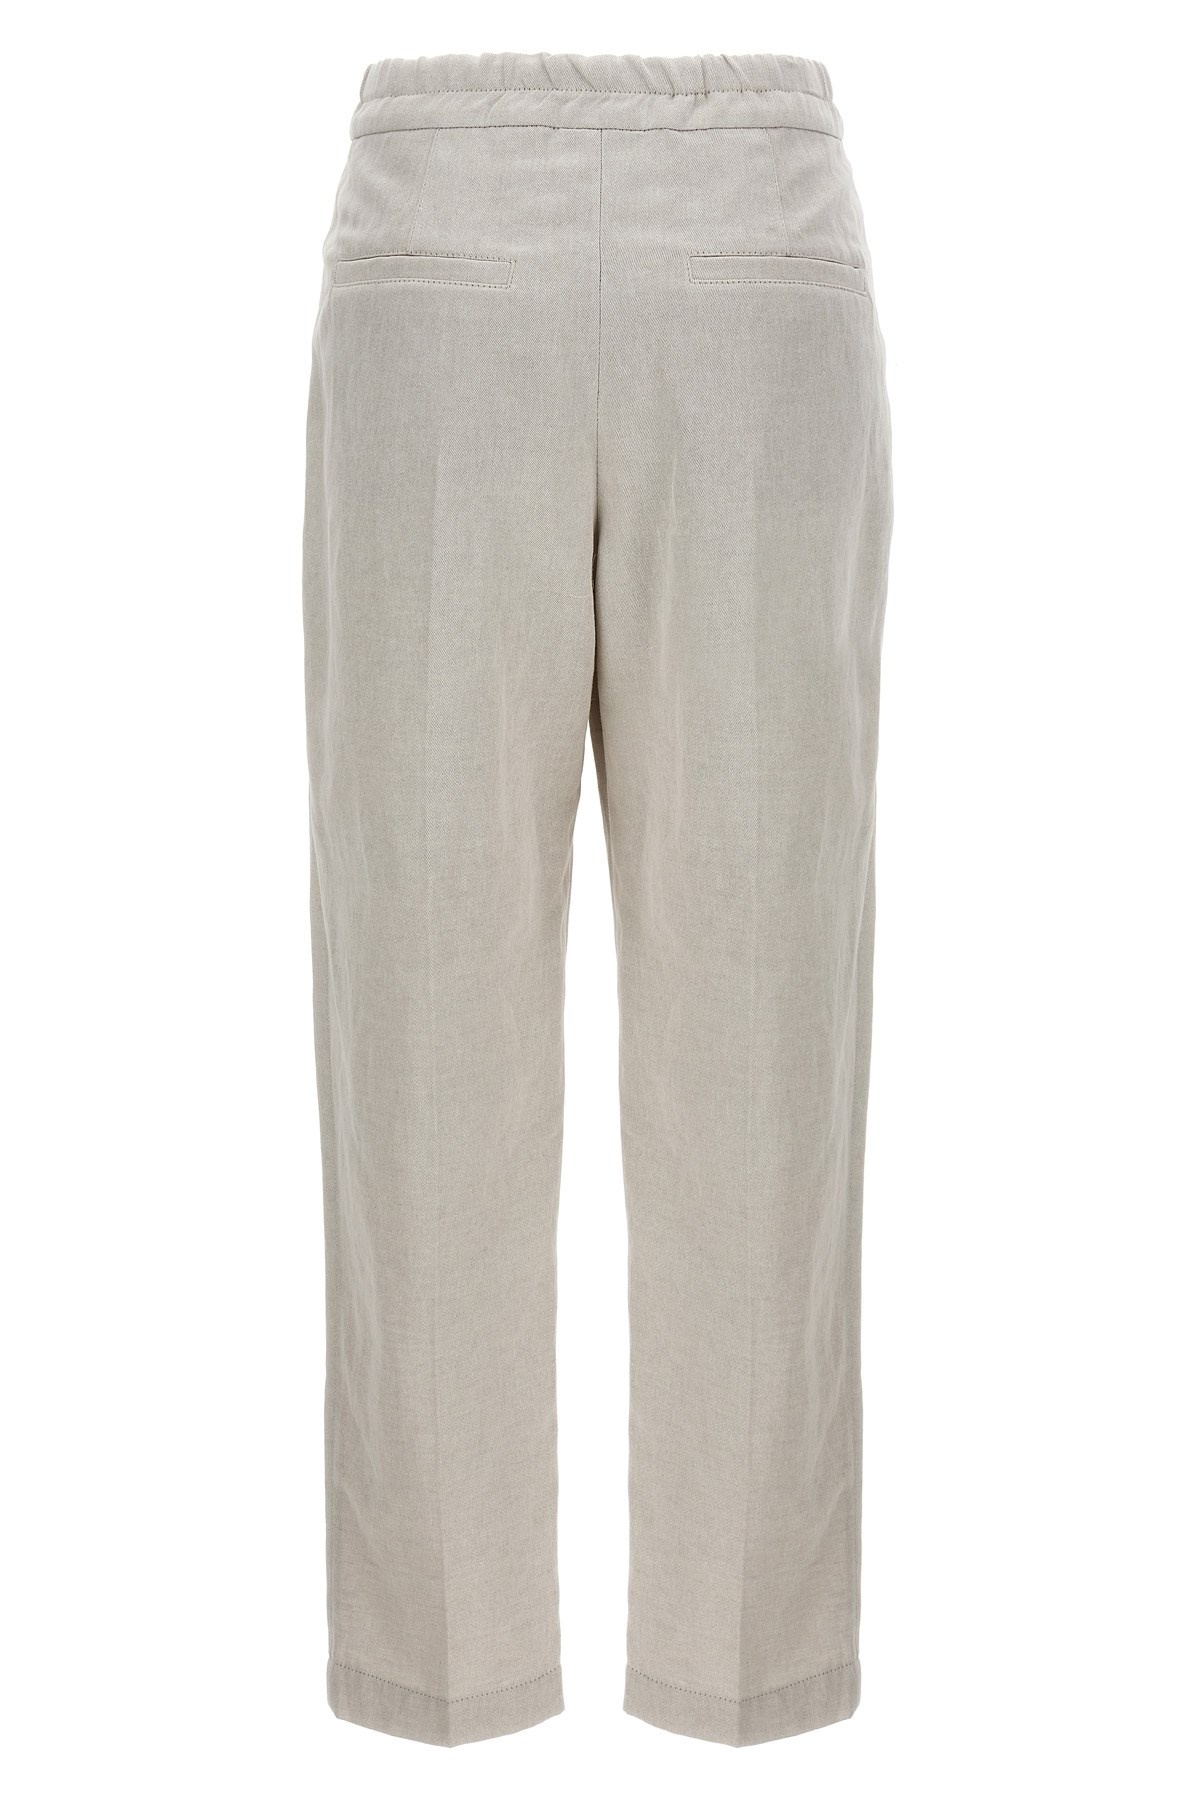 Linen cotton trousers - 3